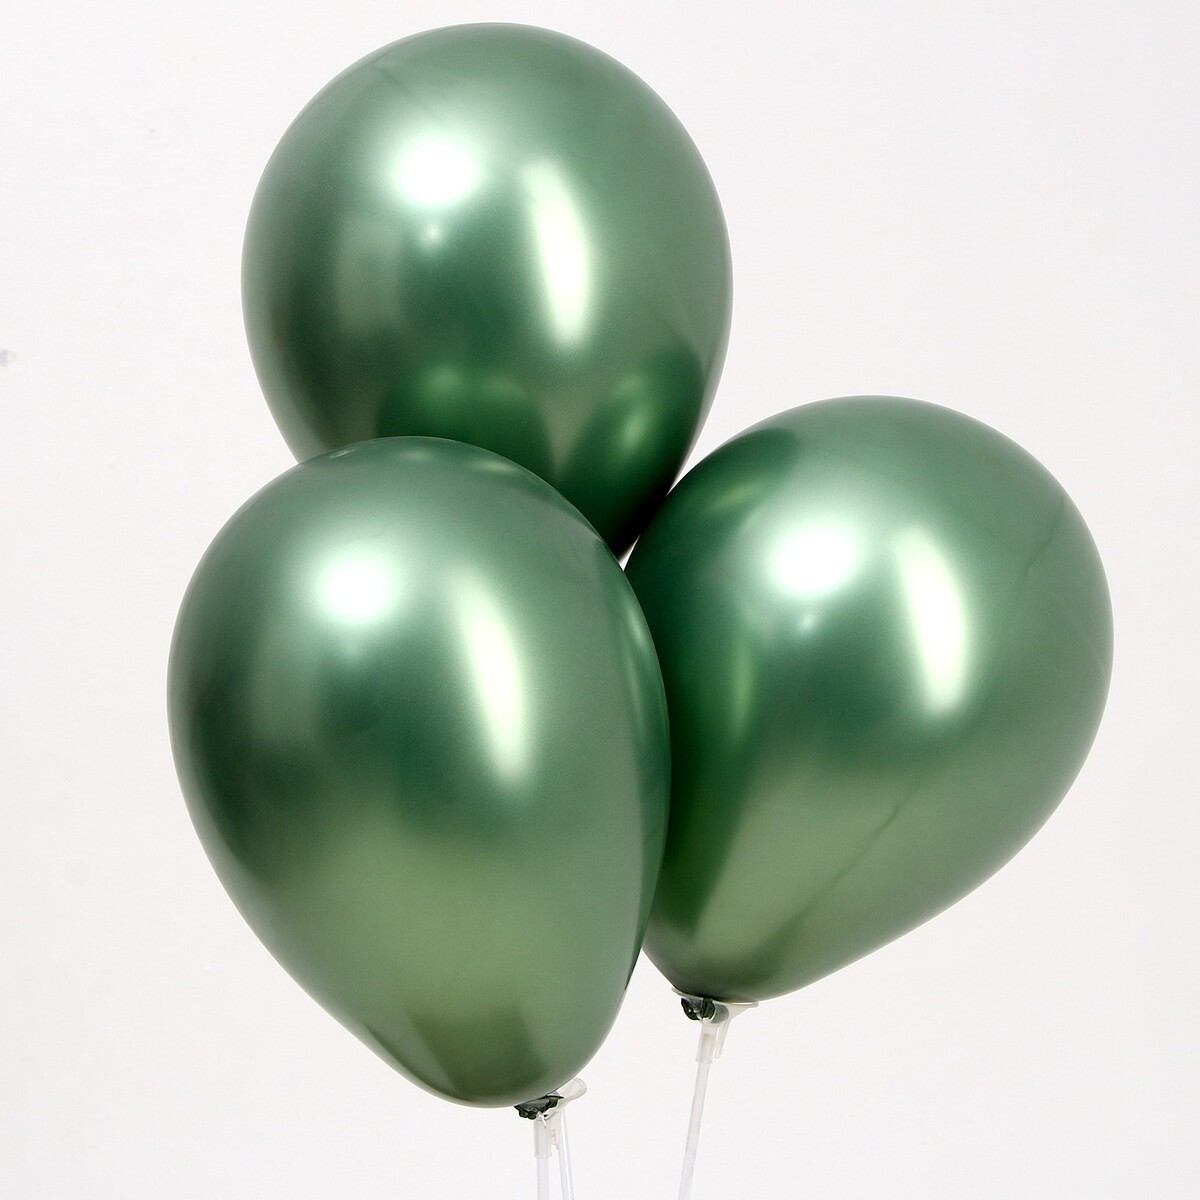 Шар латексный 9“, хром, набор 100 шт, цвет натуральный зеленый шар латексный 9“ хром набор 100 шт натуральный зеленый